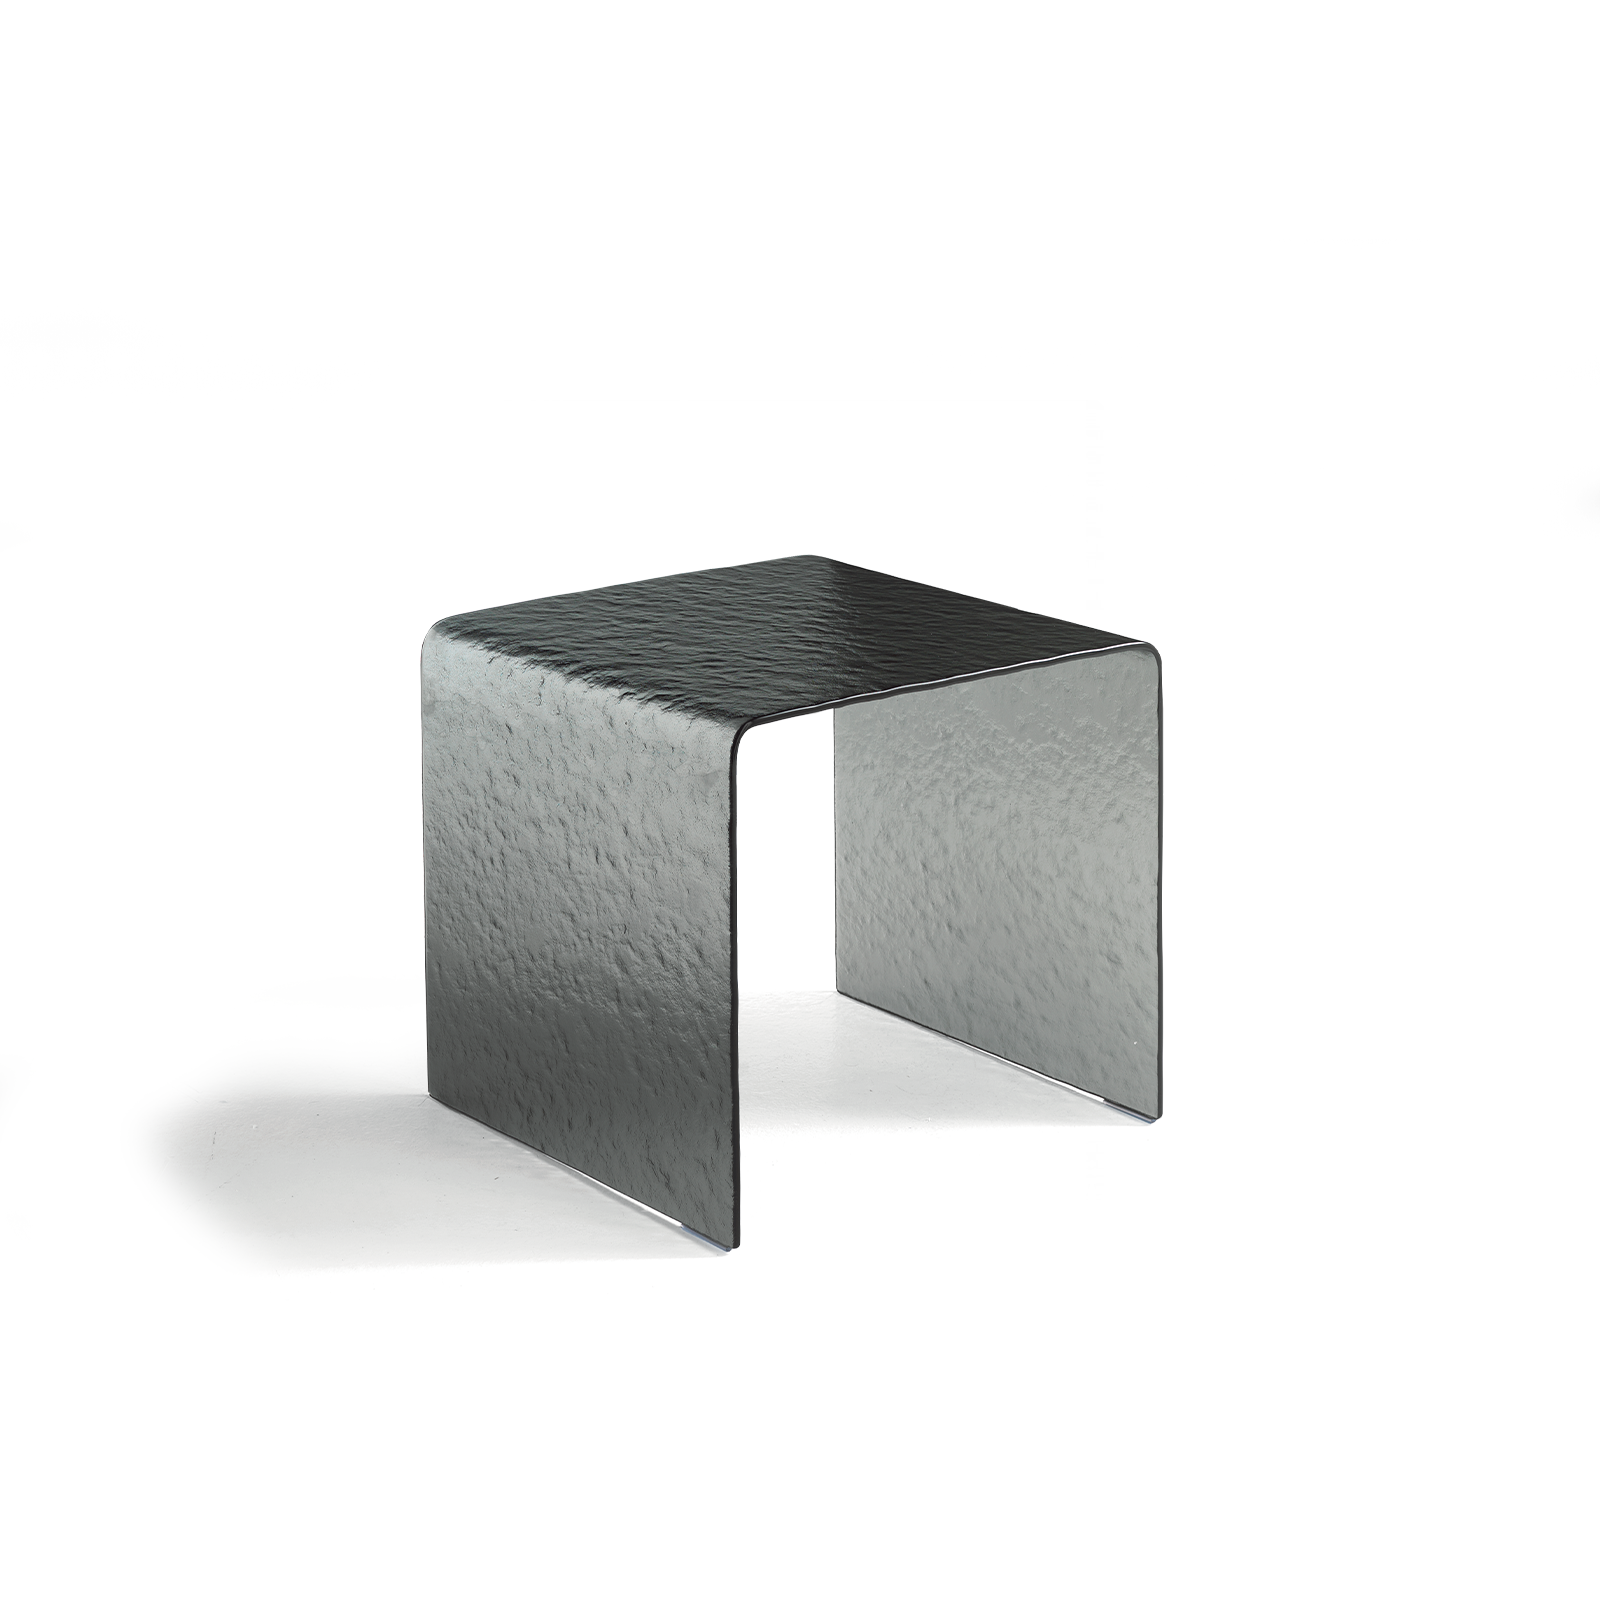 Elegante mesa baja "Plinio" de cristal transparente martillado curvado 45x45 cm 48h